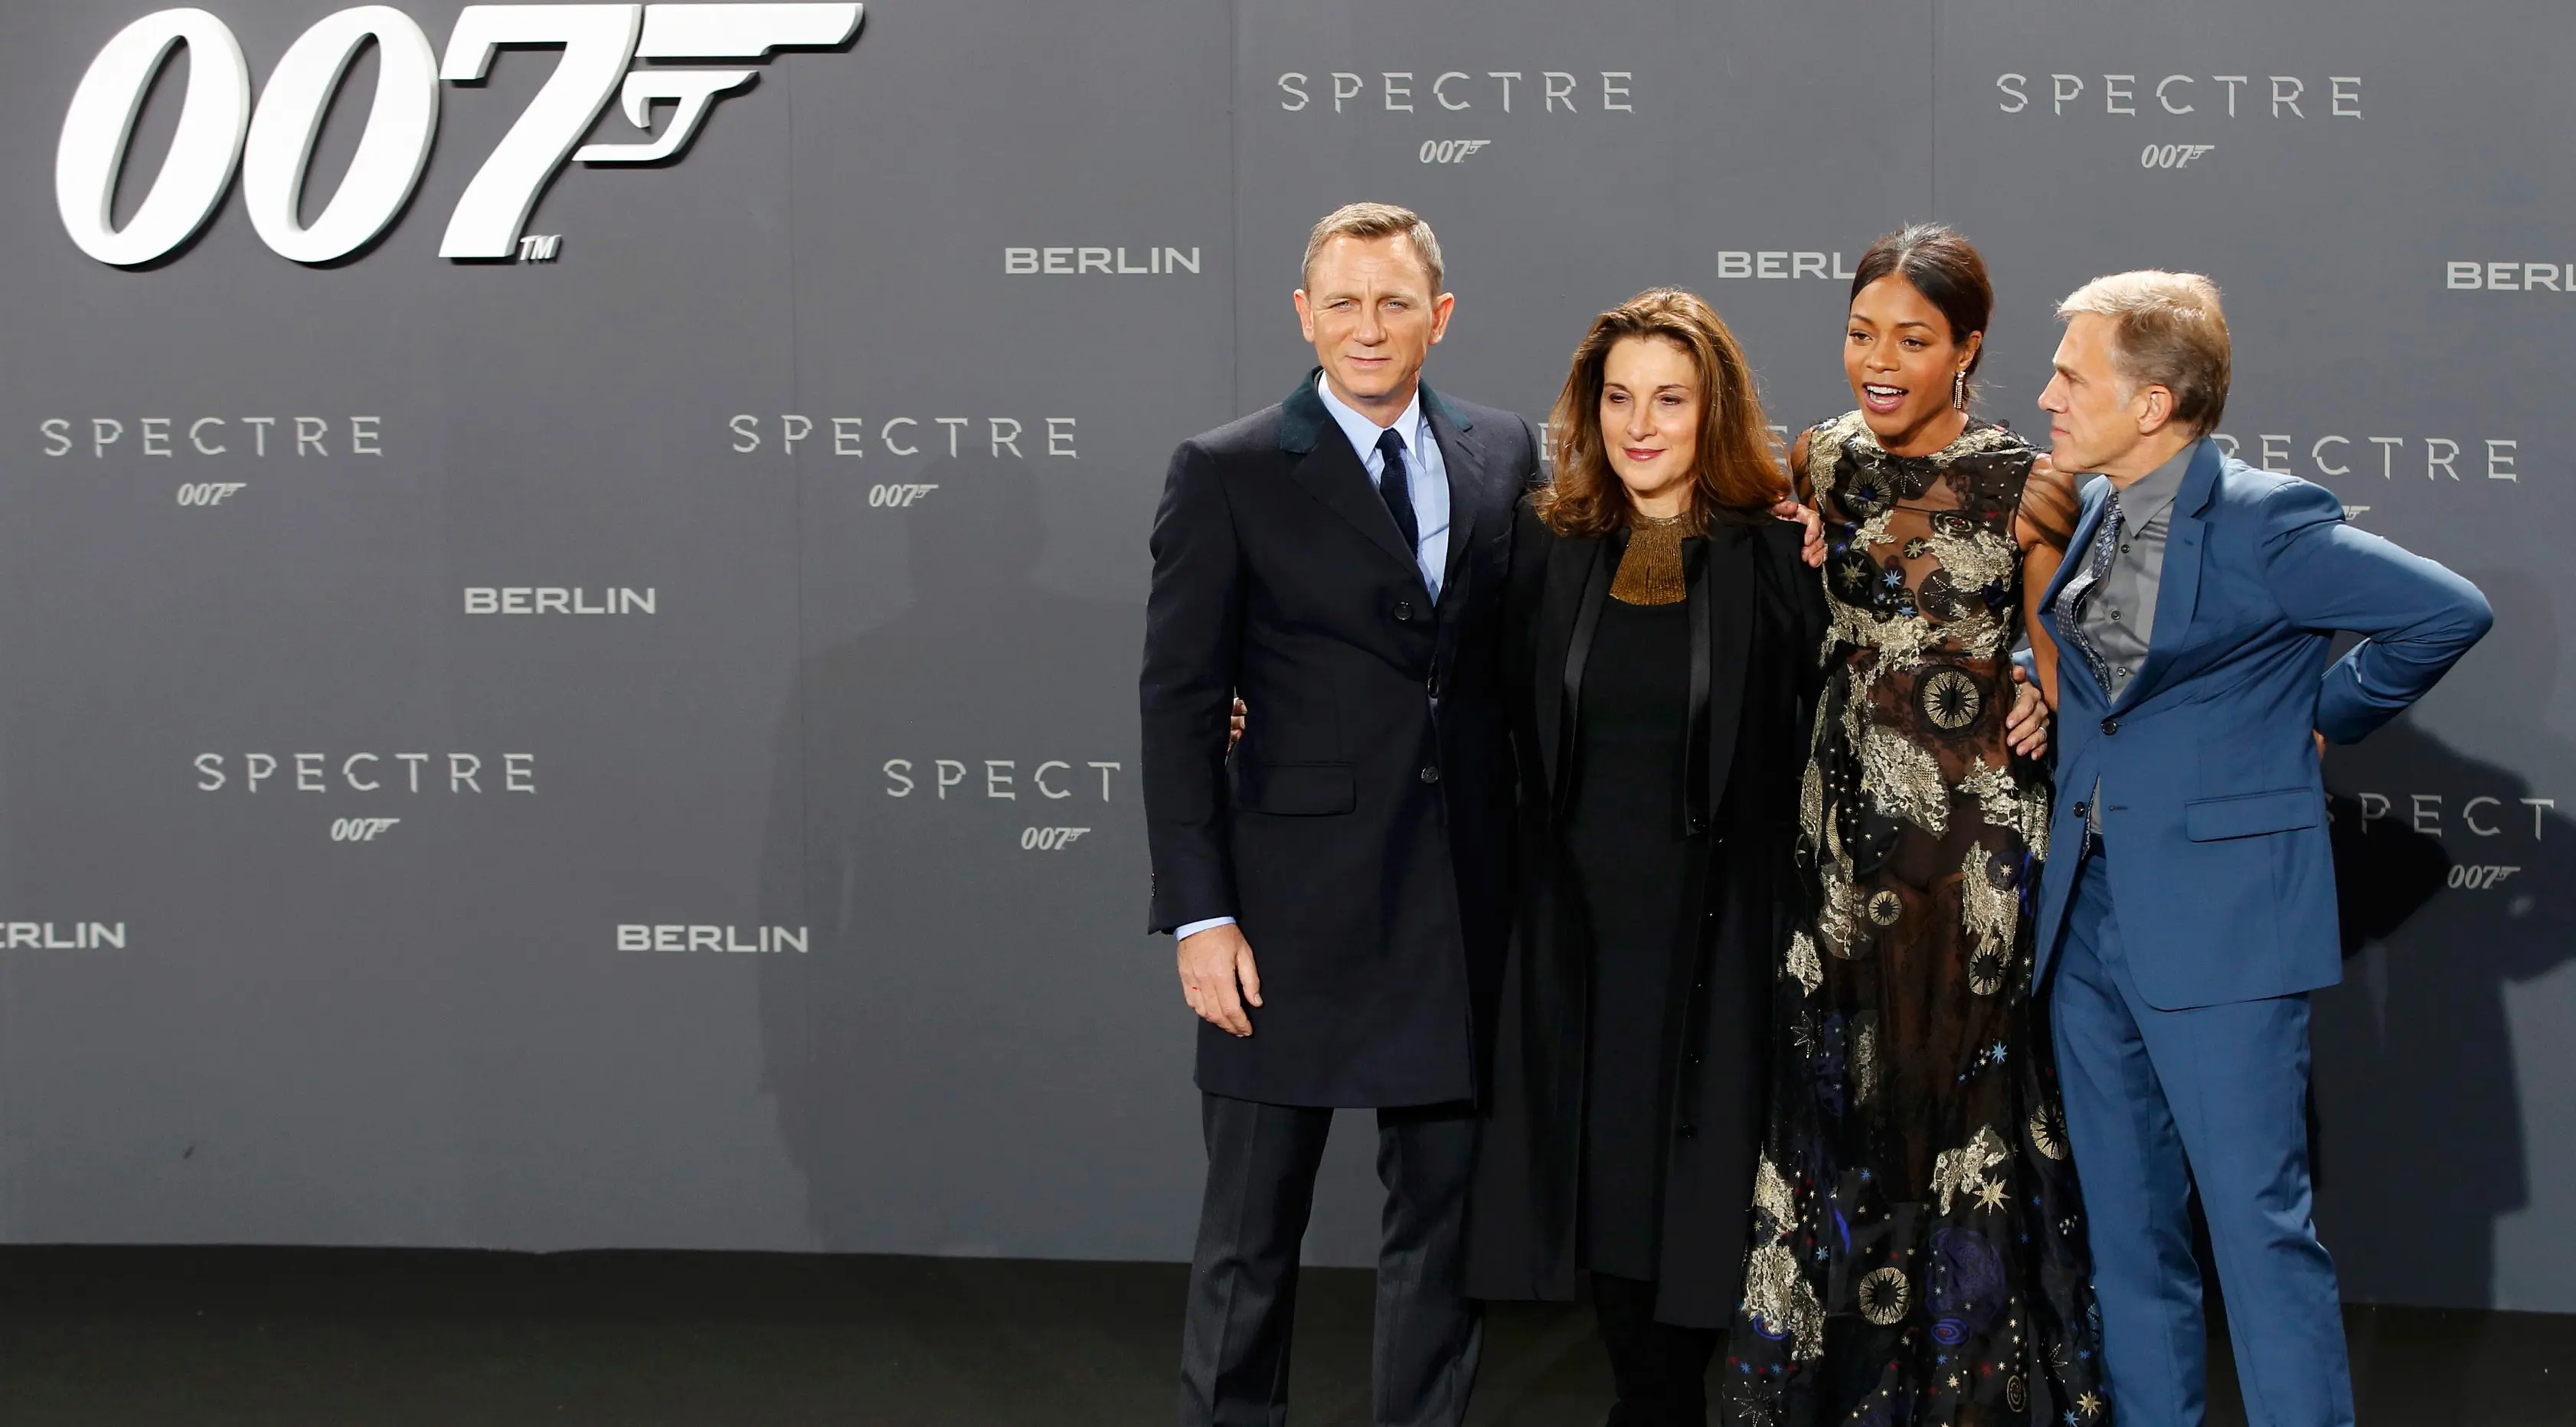 Aktor Daniel Craig (kiri) berpose bersama Produser Barbara Broccoli (kedua kiri) dan artis lainnya saat hadiri premiere film James Bond 007 "Spectre" di Jerman, (28/10/2015). Film ini akan dirilis pada tanggal 6 November 2015. (REUTERS/Fabrizio Bensch)